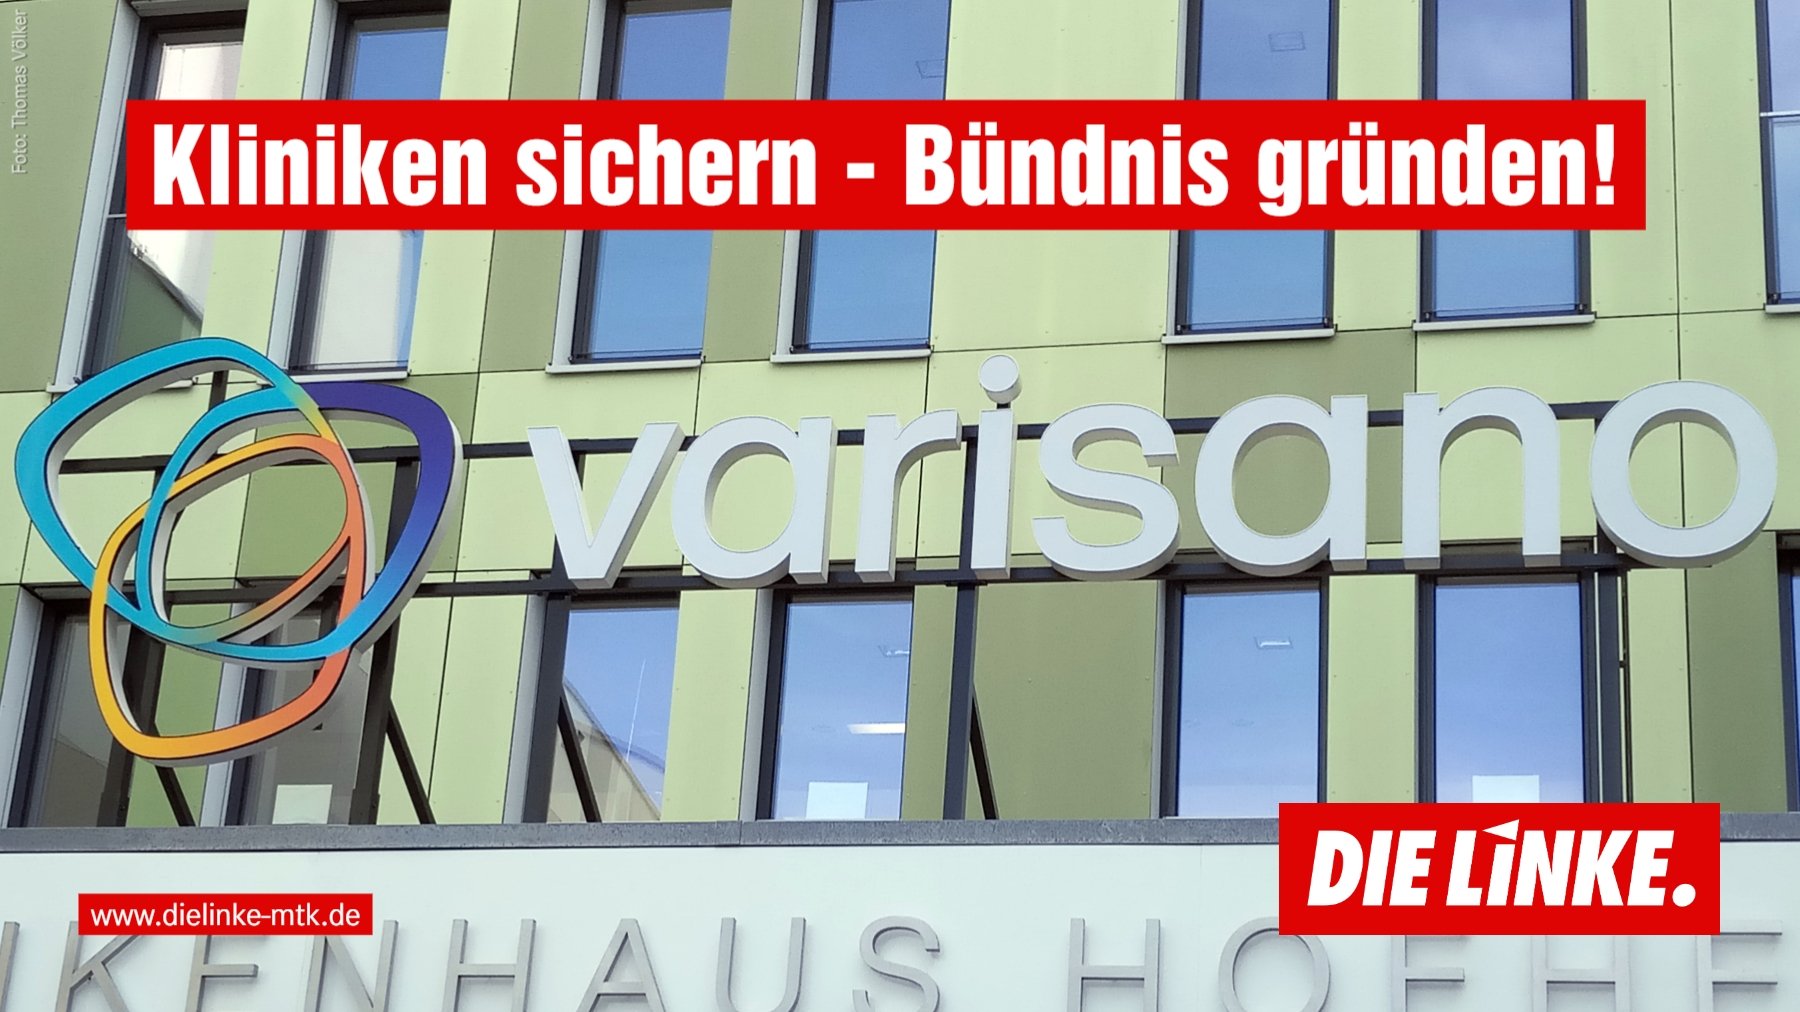 Ein Foto der Kliniken in Hofheim mit dem neuen Namensschriftzug varisano. Dazu der Bildtext Kliniken sichern - Bündnis gründen!